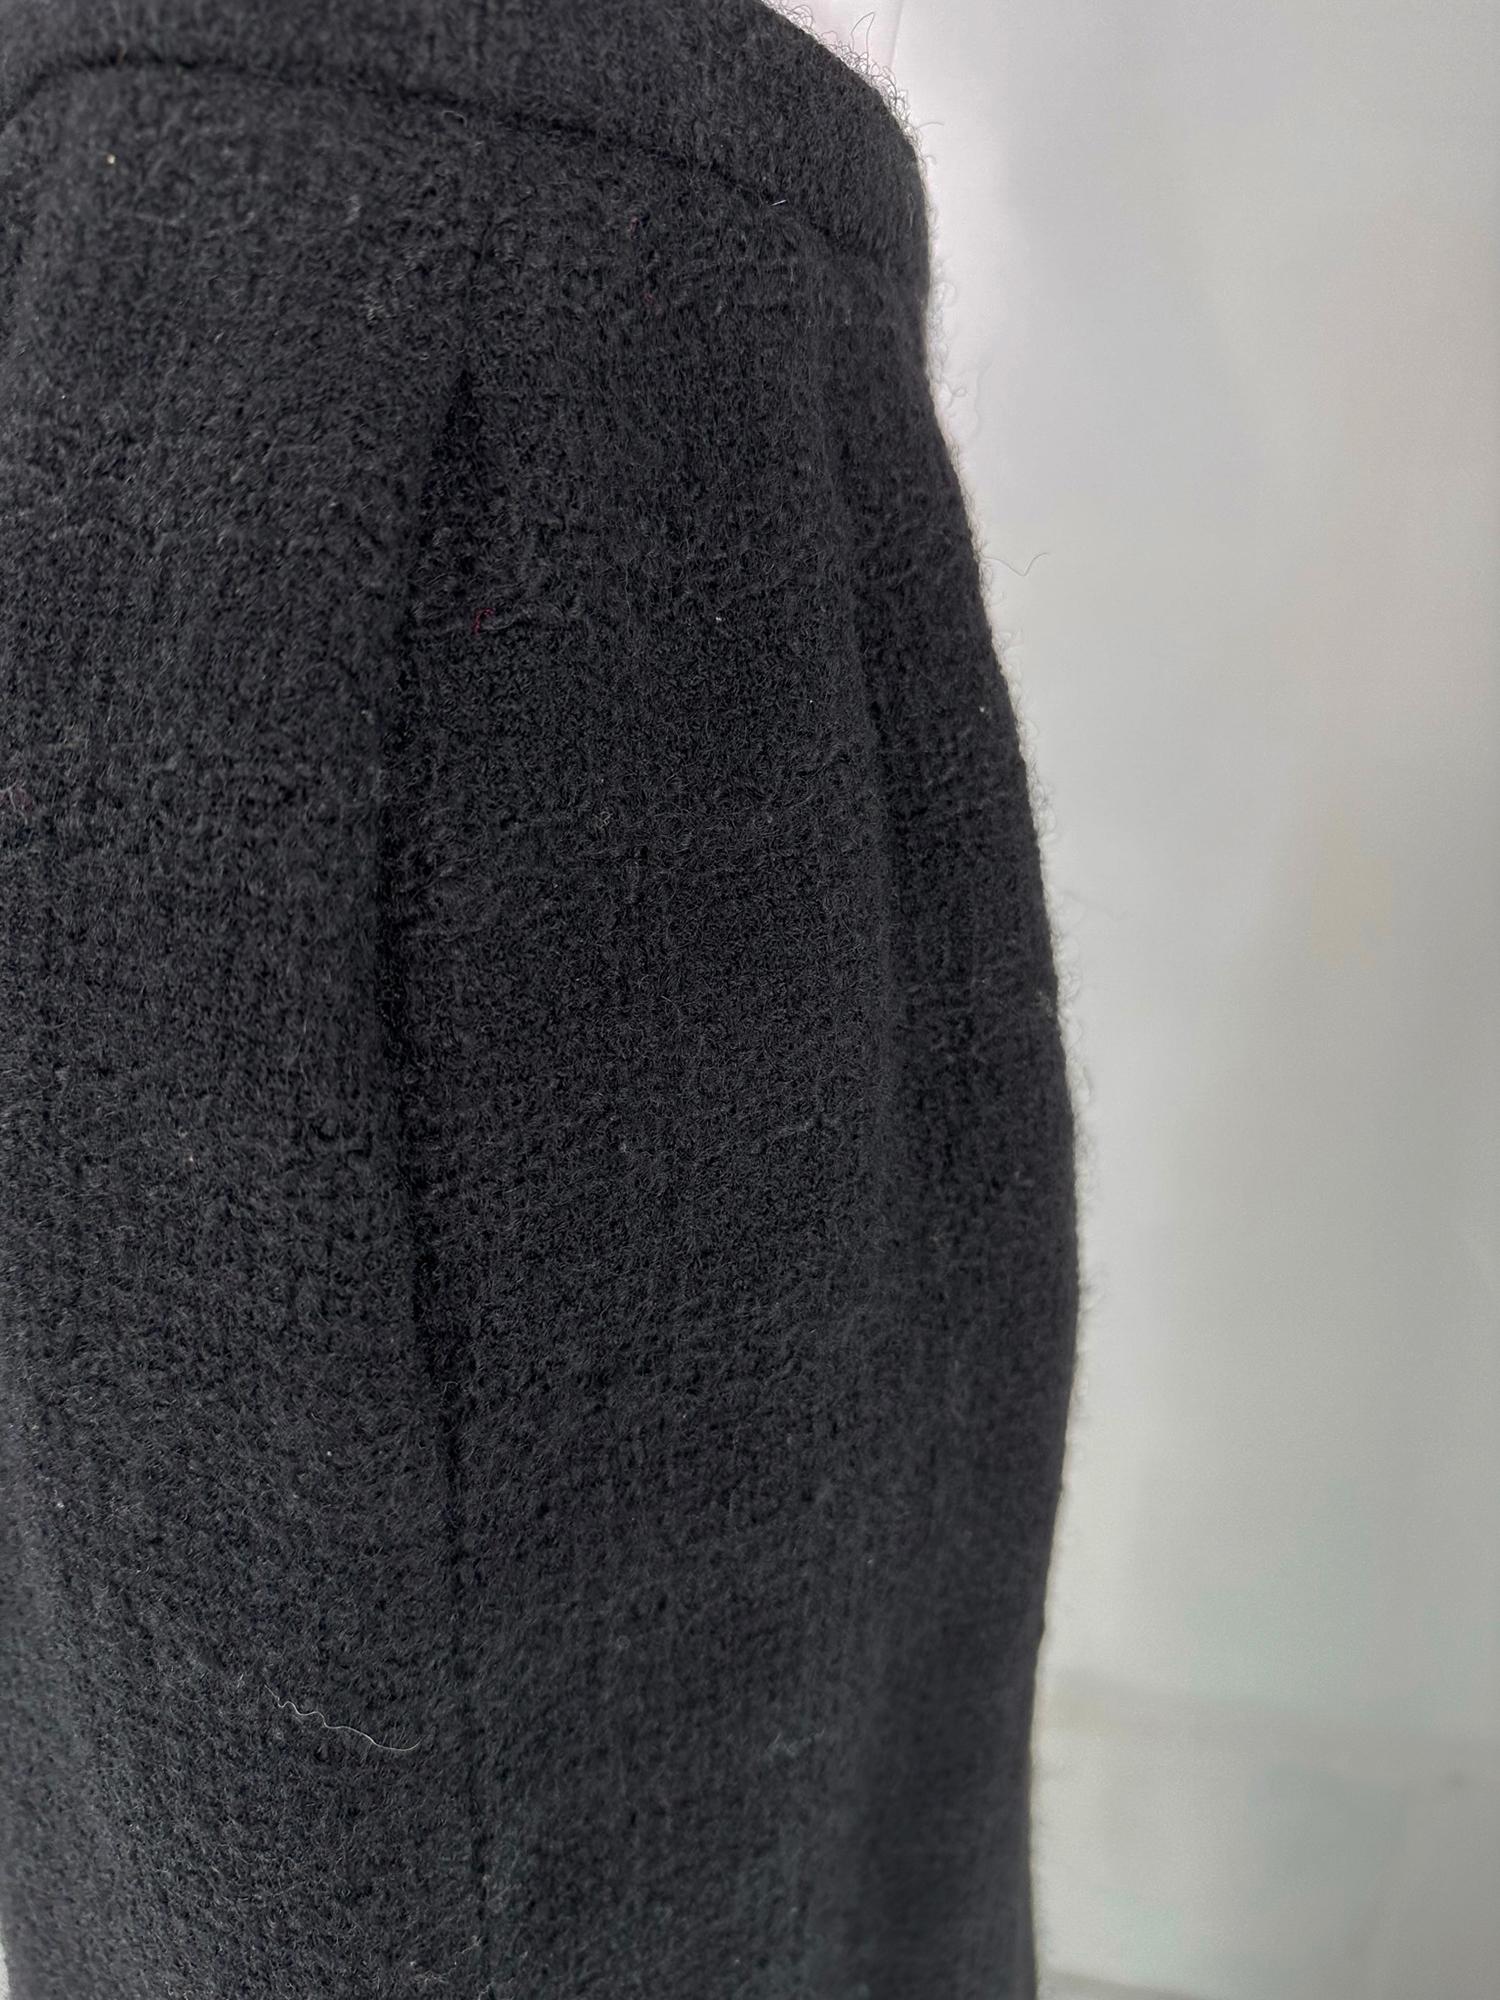 Chanel Creations-Paris Black Boucle Wool Suit 1971 For Sale 8